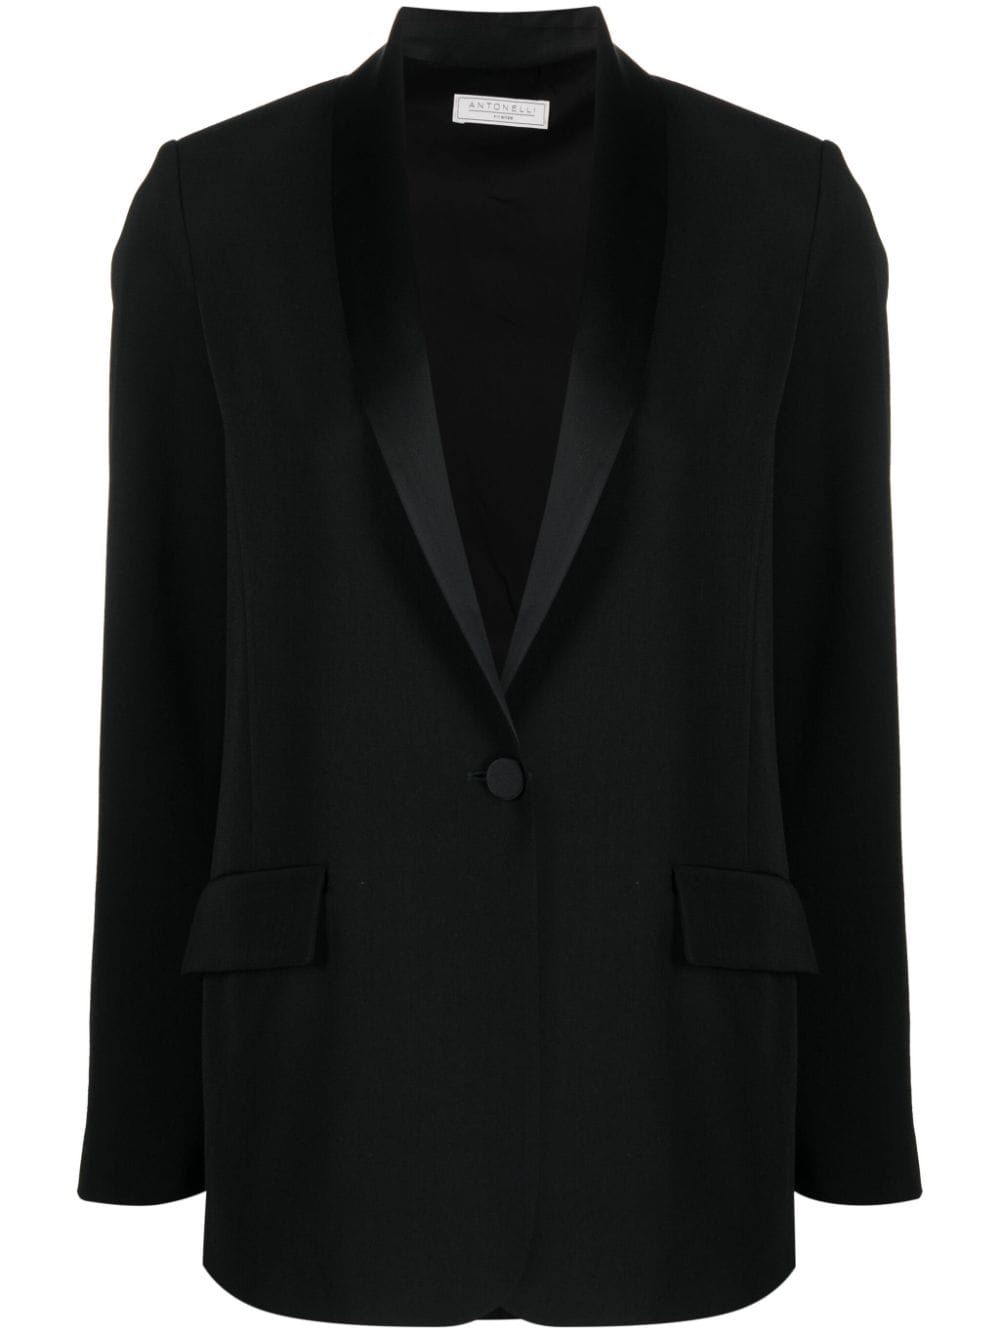 Antonelli 披肩领单排扣西装夹克 In Black